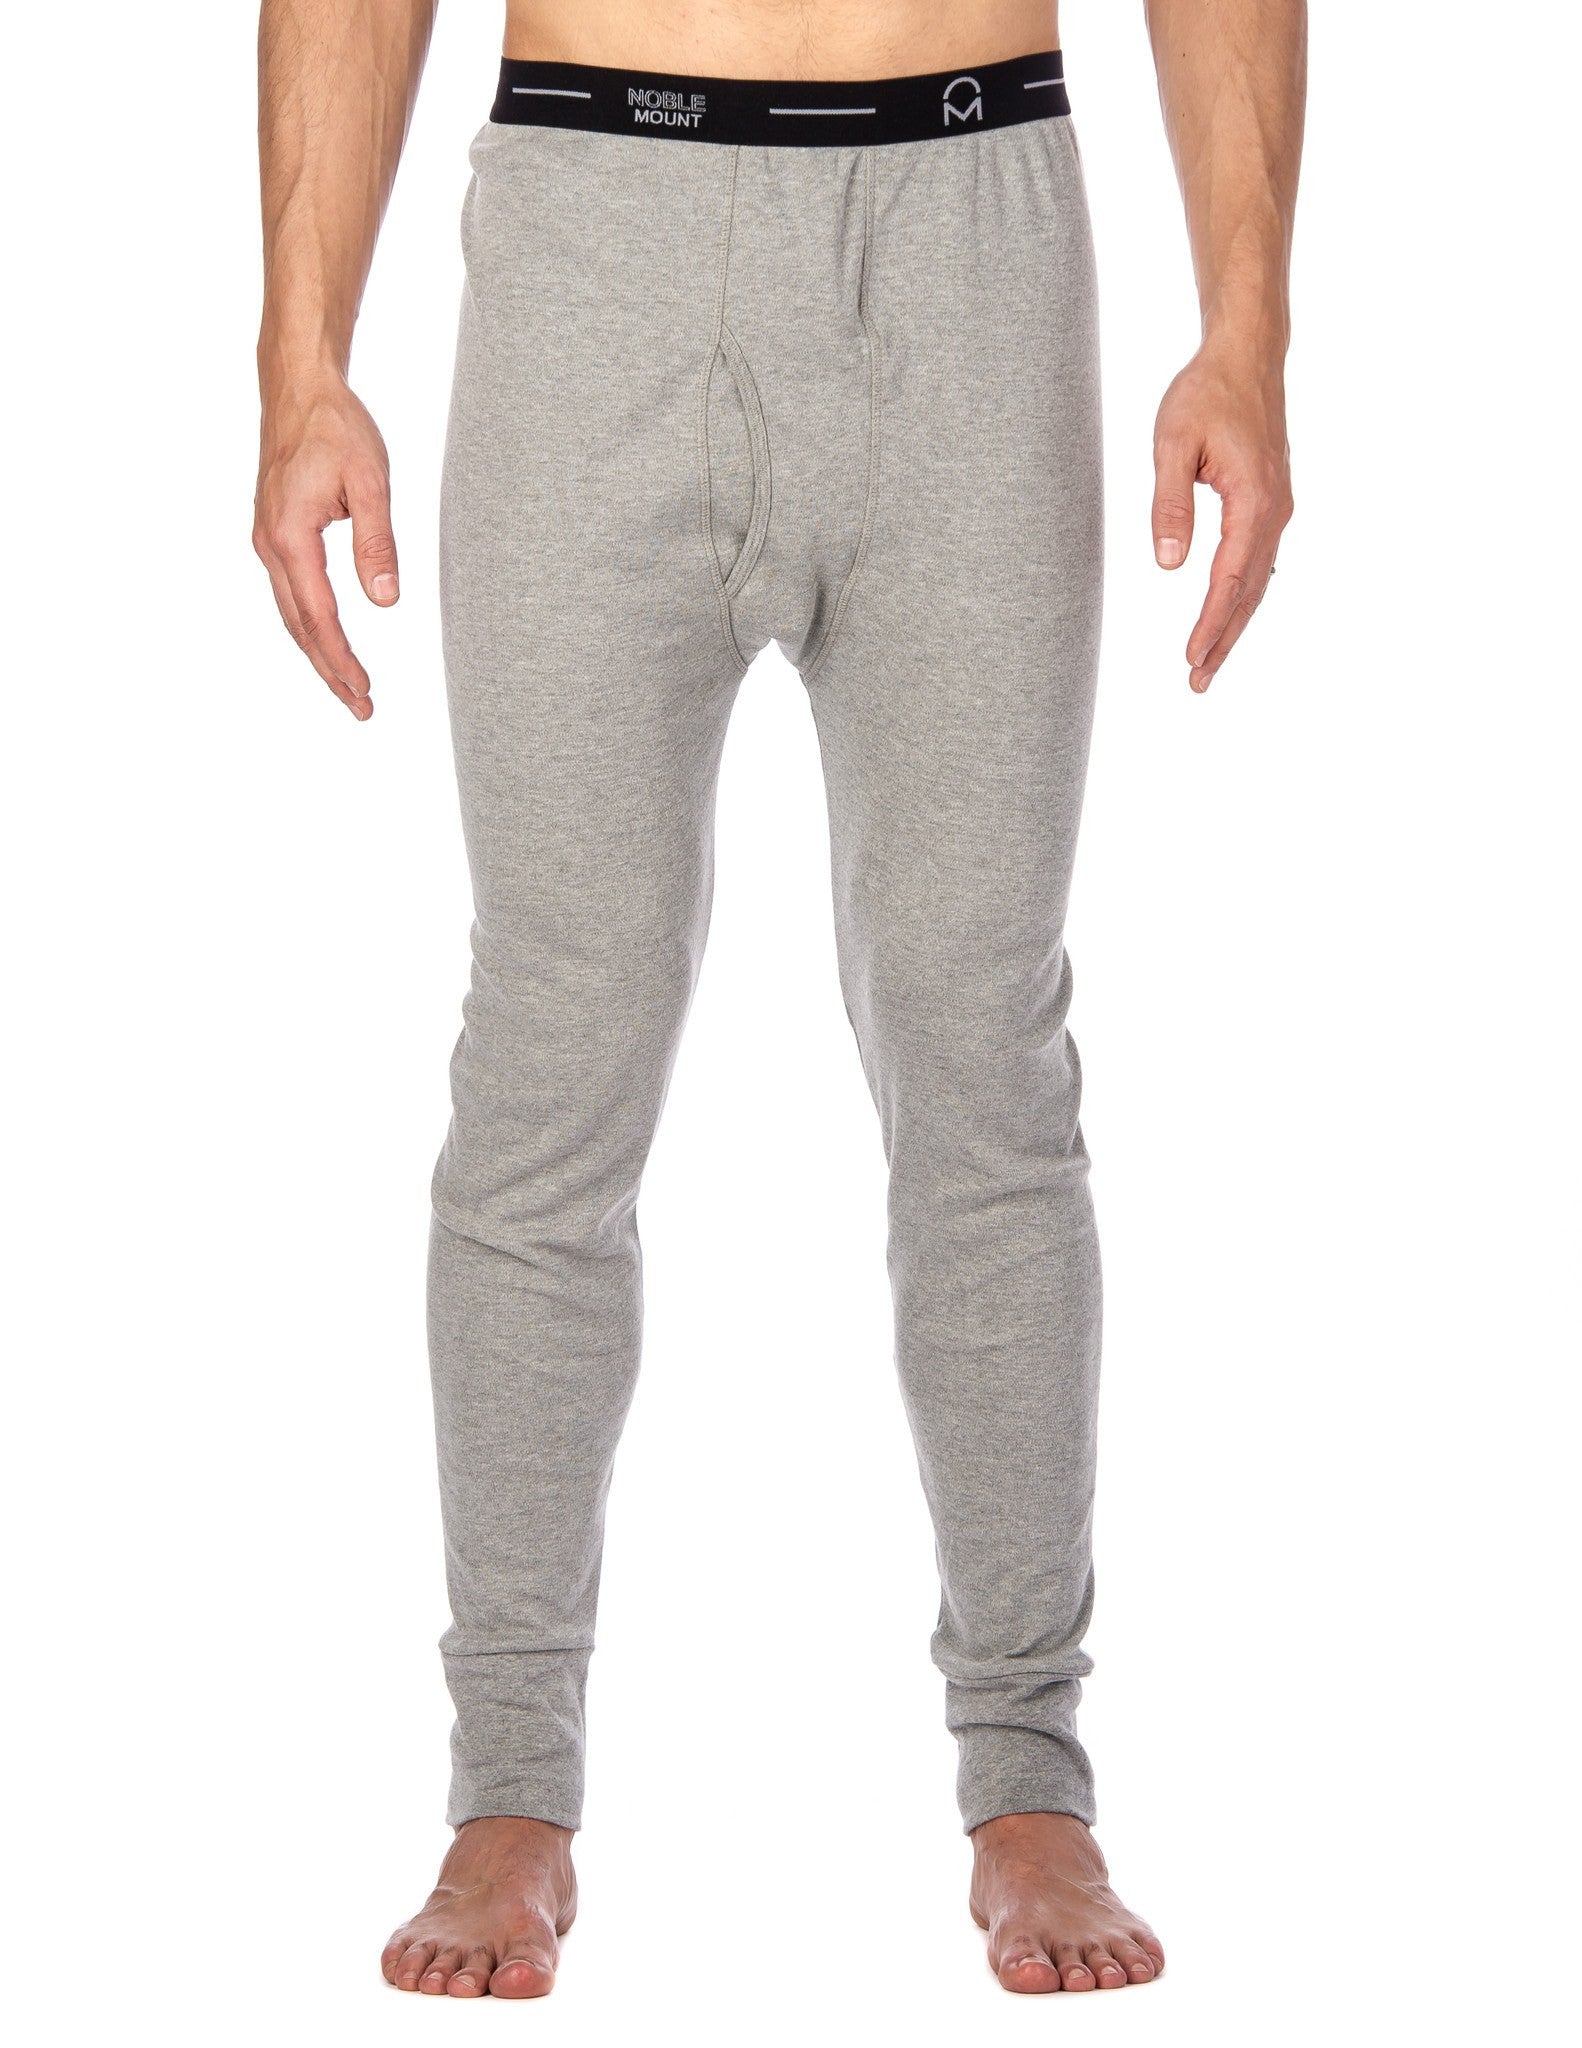 Men's 'Soft Comfort' Premium Thermal Long John Pants